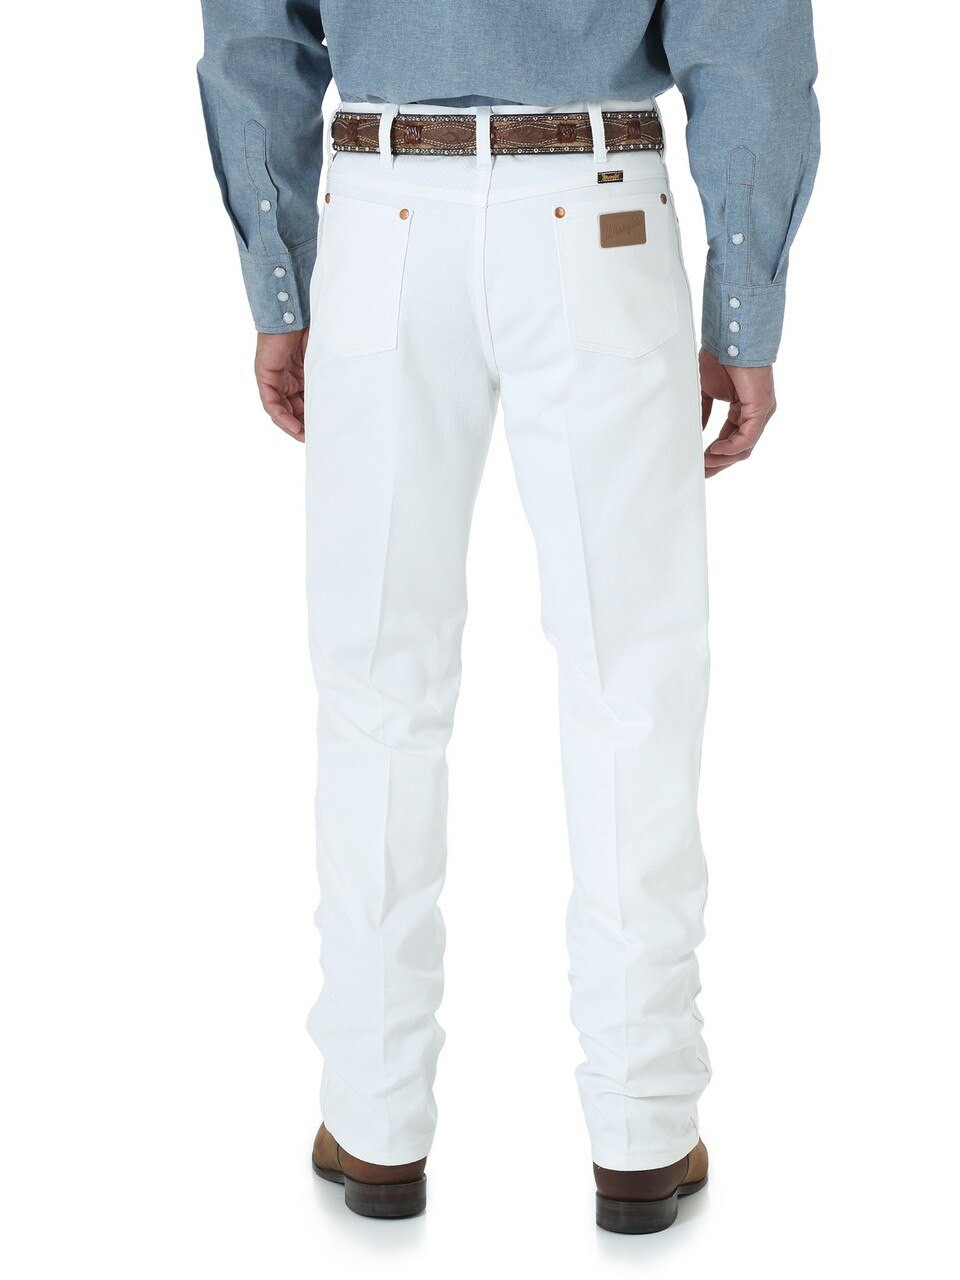 WranglerÂ® Men's White Slim Fit Jeans